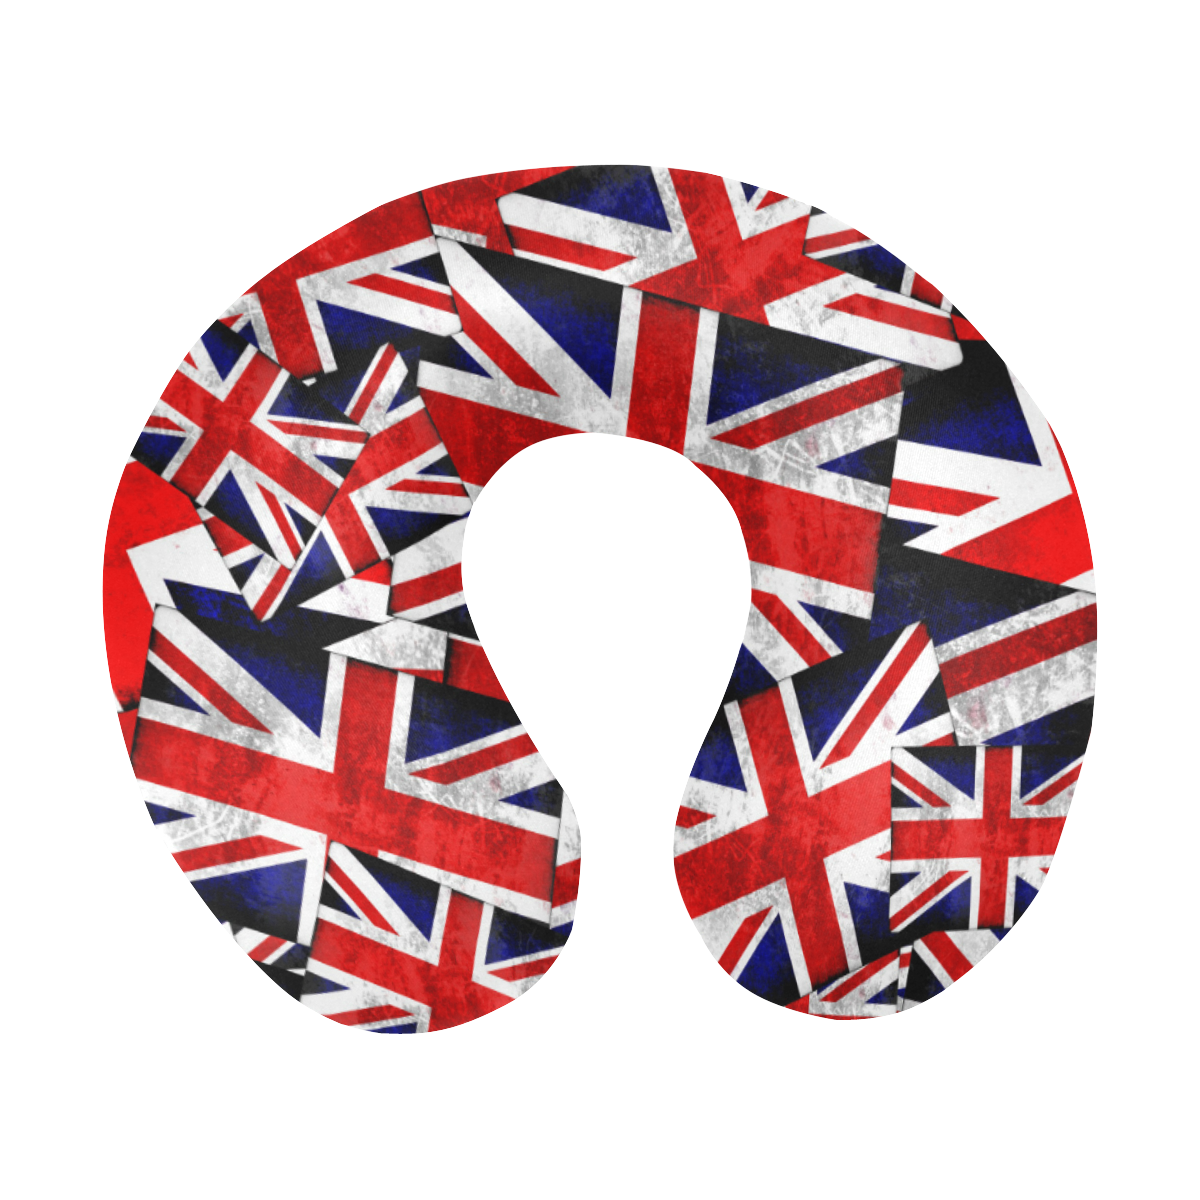 Union Jack British UK Flag U-Shape Travel Pillow